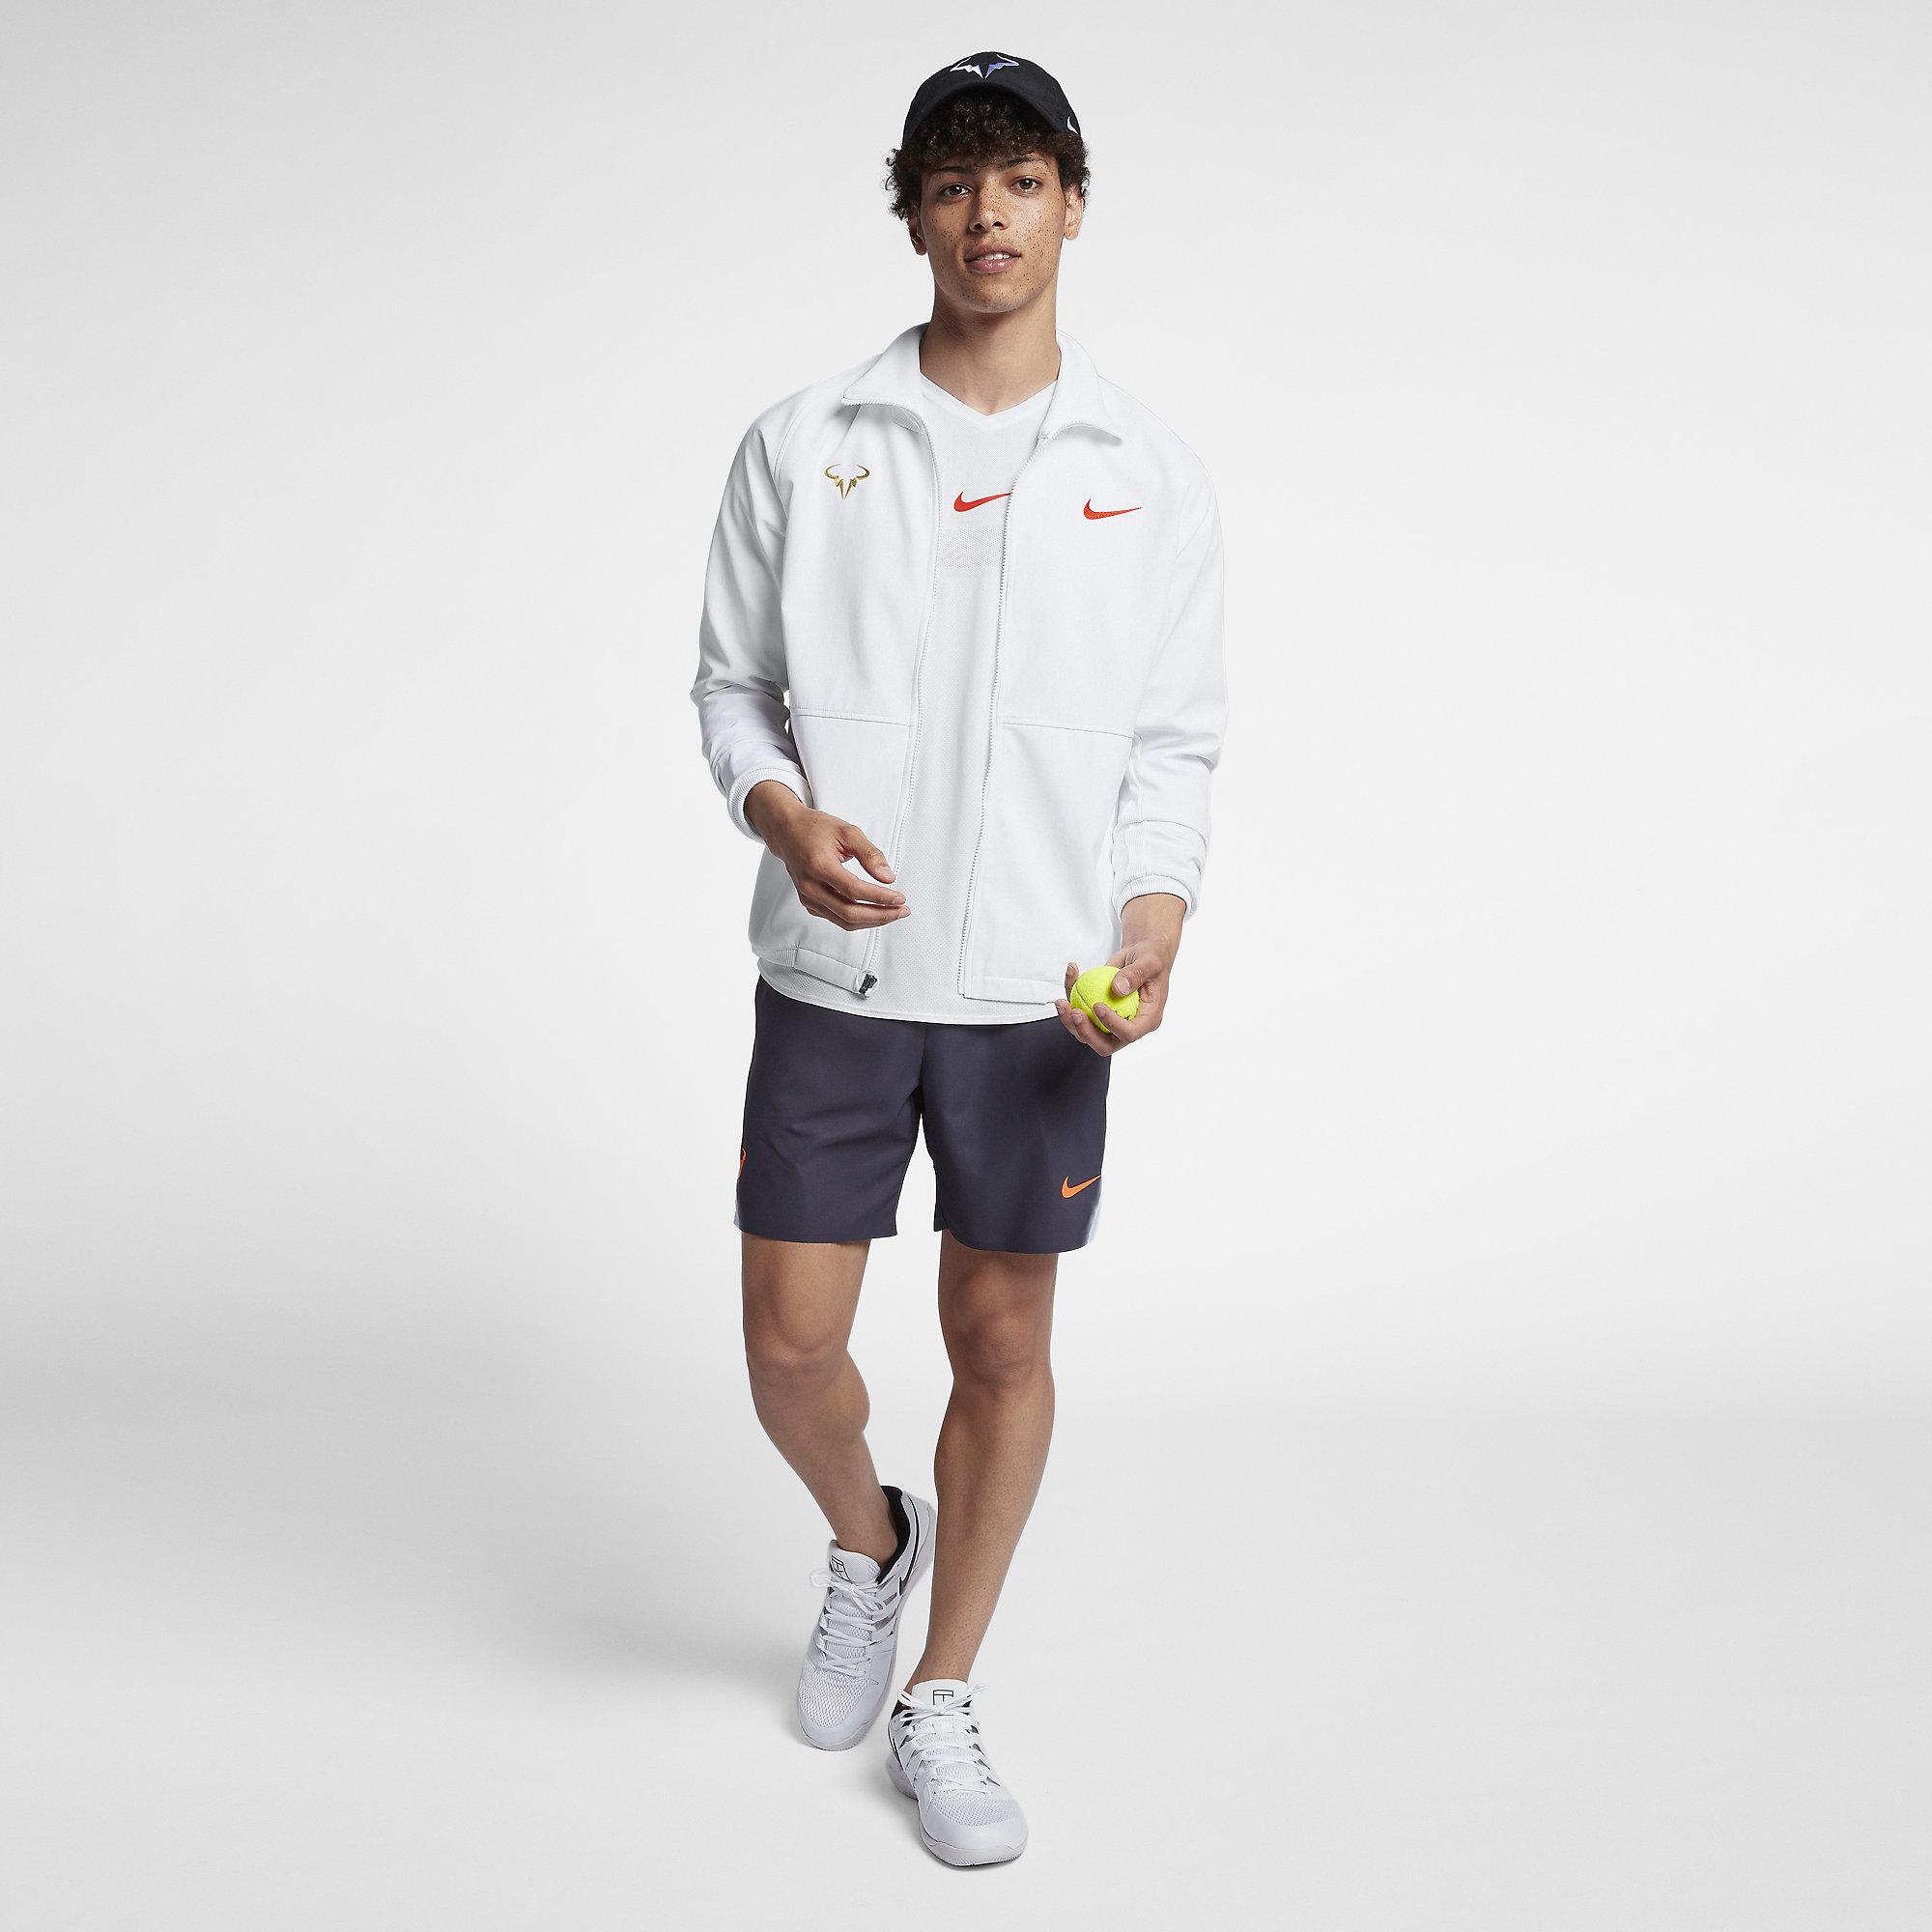 Nike Mens Rafa Tennis Jacket - White - Tennisnuts.com